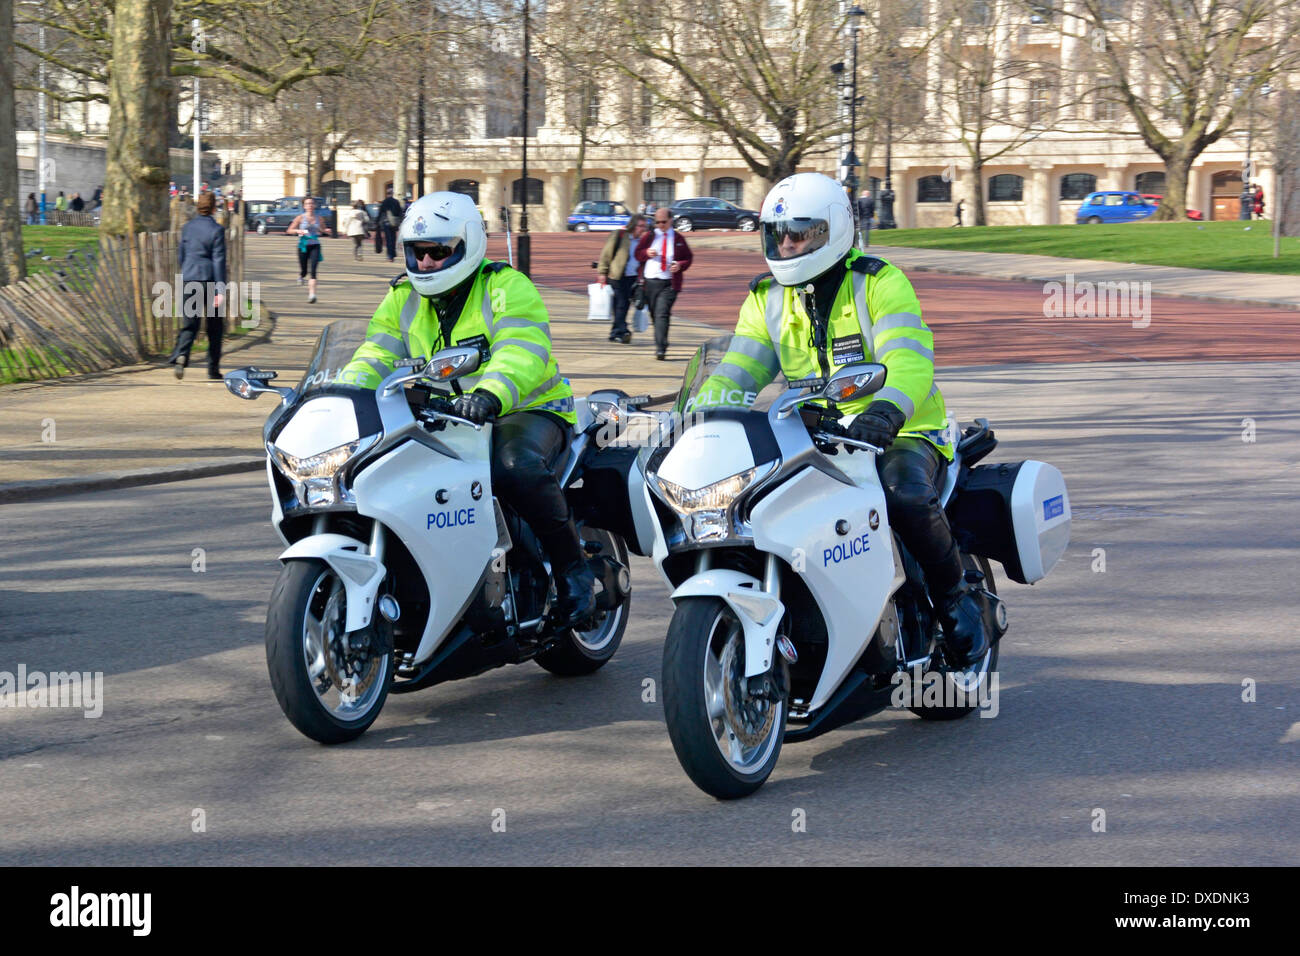 Due piloti motociclistici ufficiali della polizia metropolitana ad alta visibilità sulle moto Honda pattugliando Horse Guards Parade nel centro di Londra Inghilterra Regno Unito Foto Stock